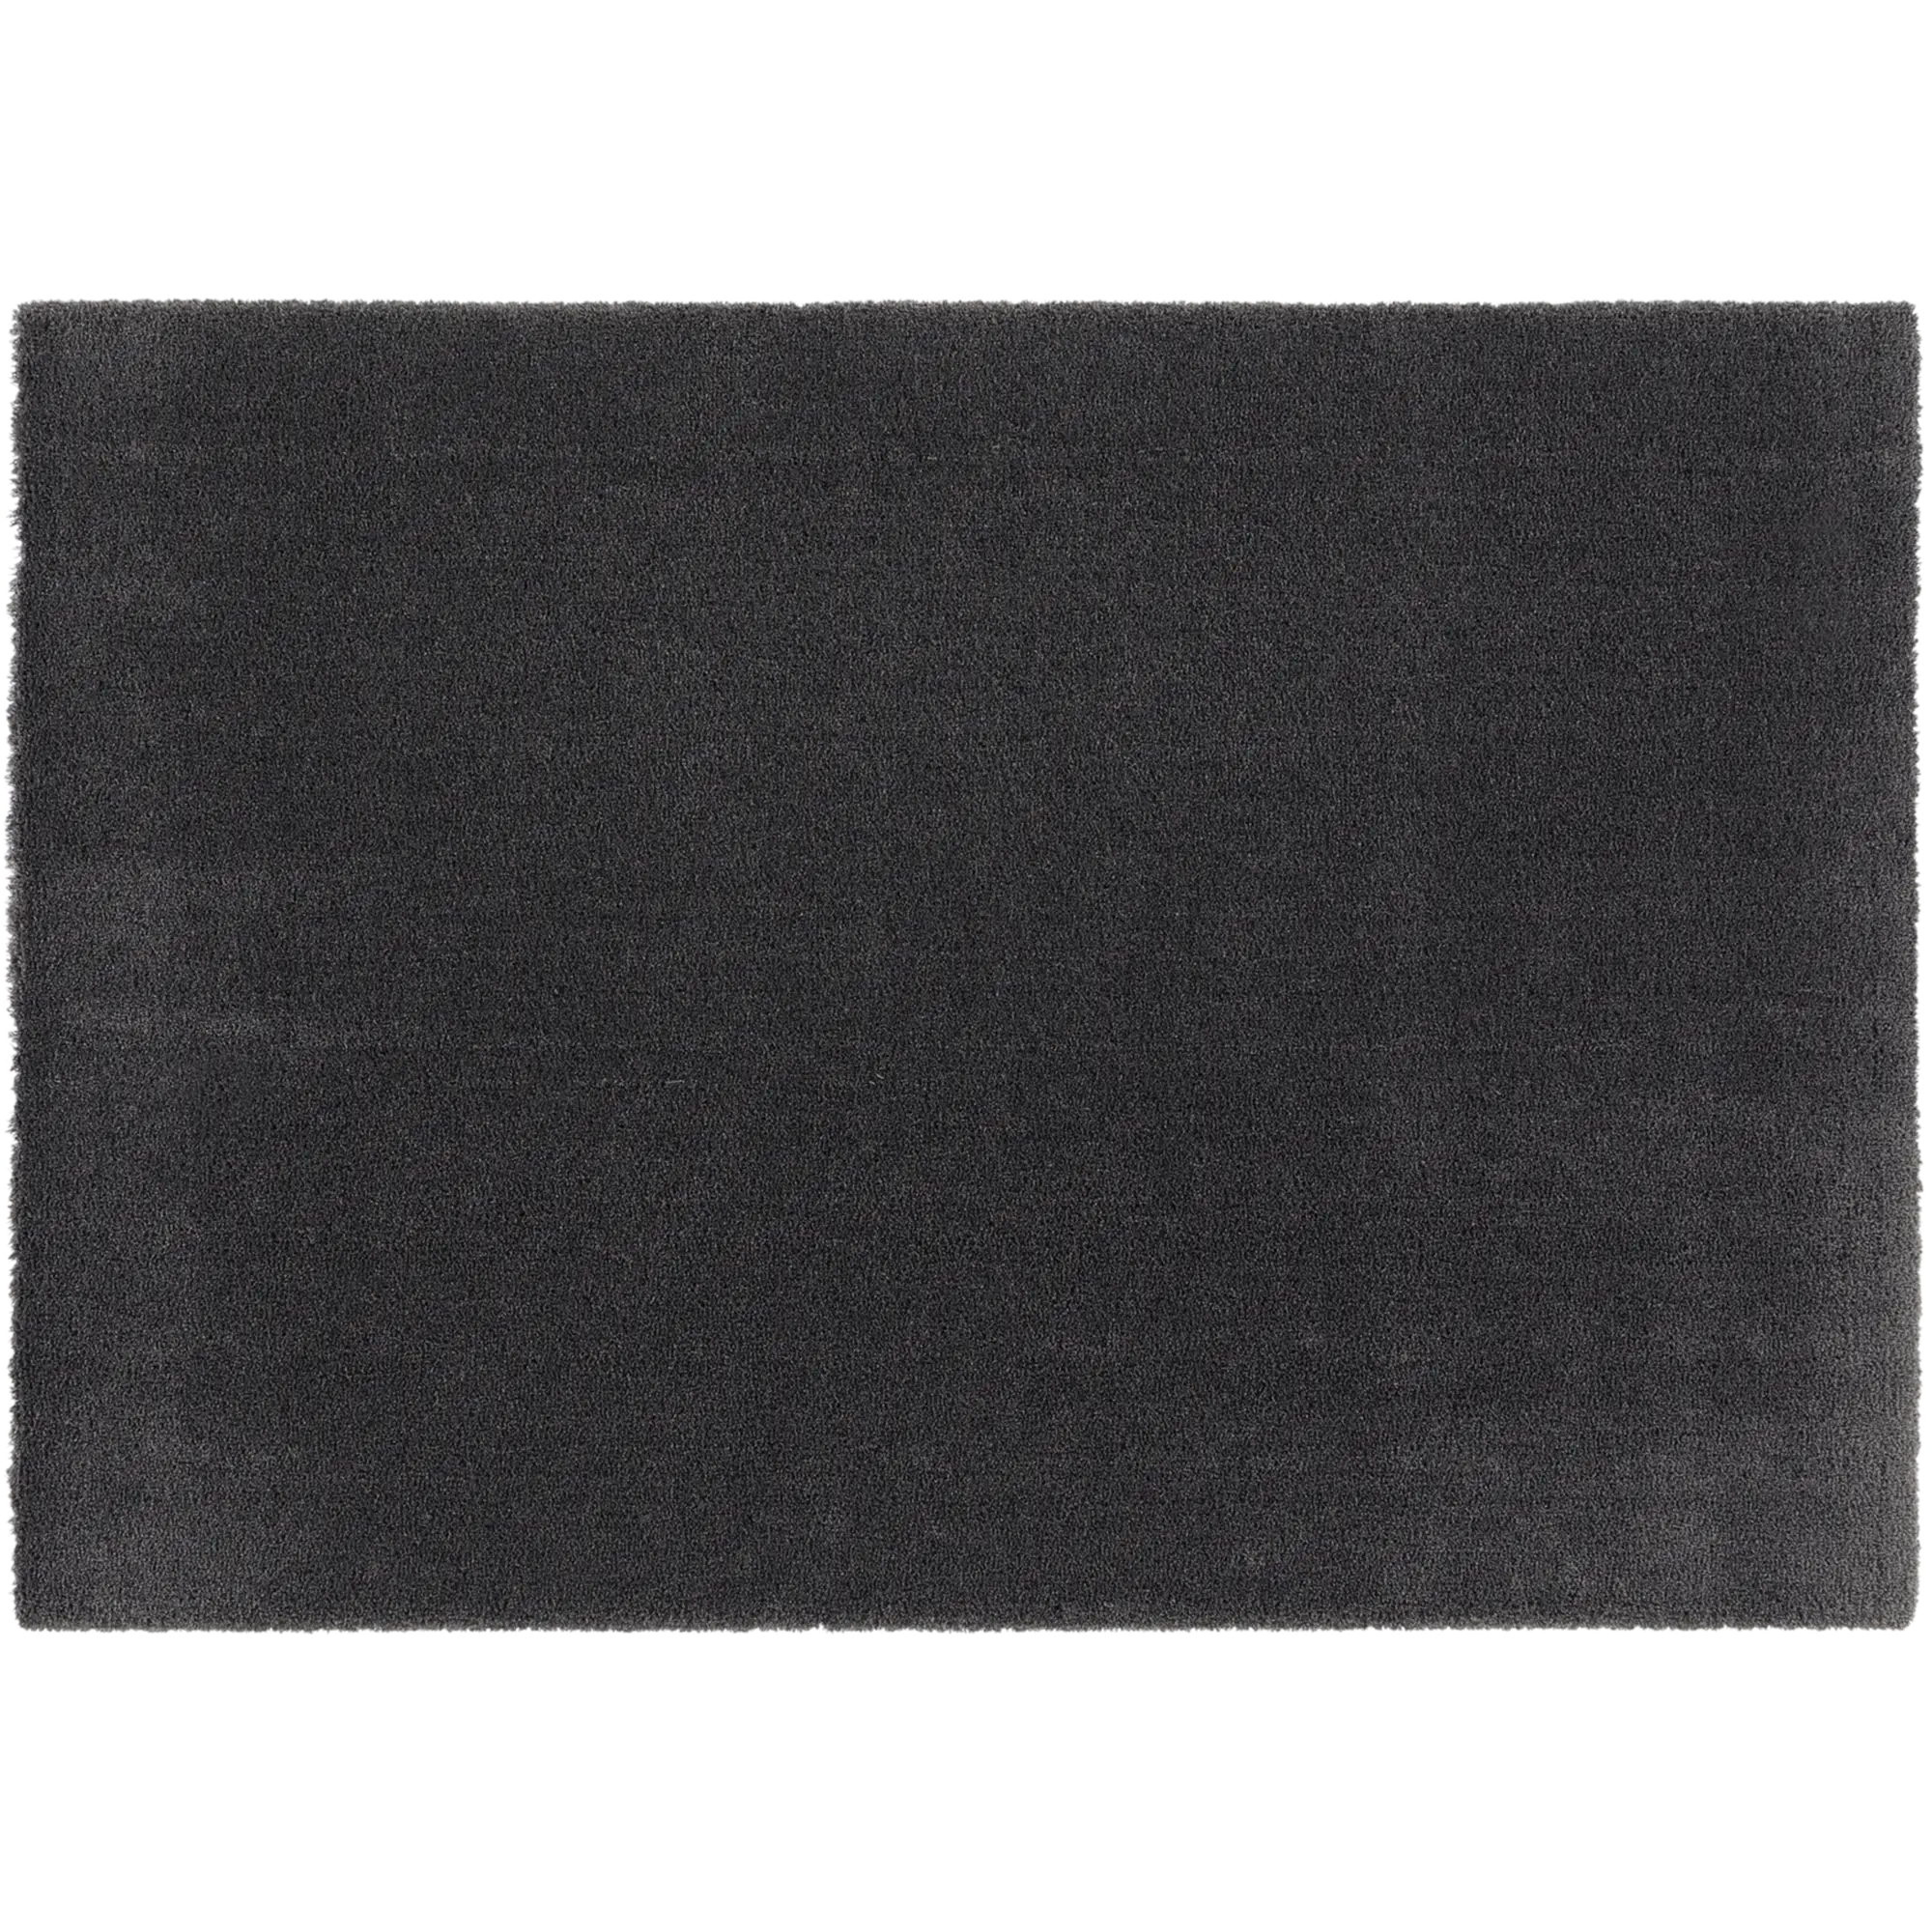 Tappeto Tony in poliestere, grigio, 120x170 - 1